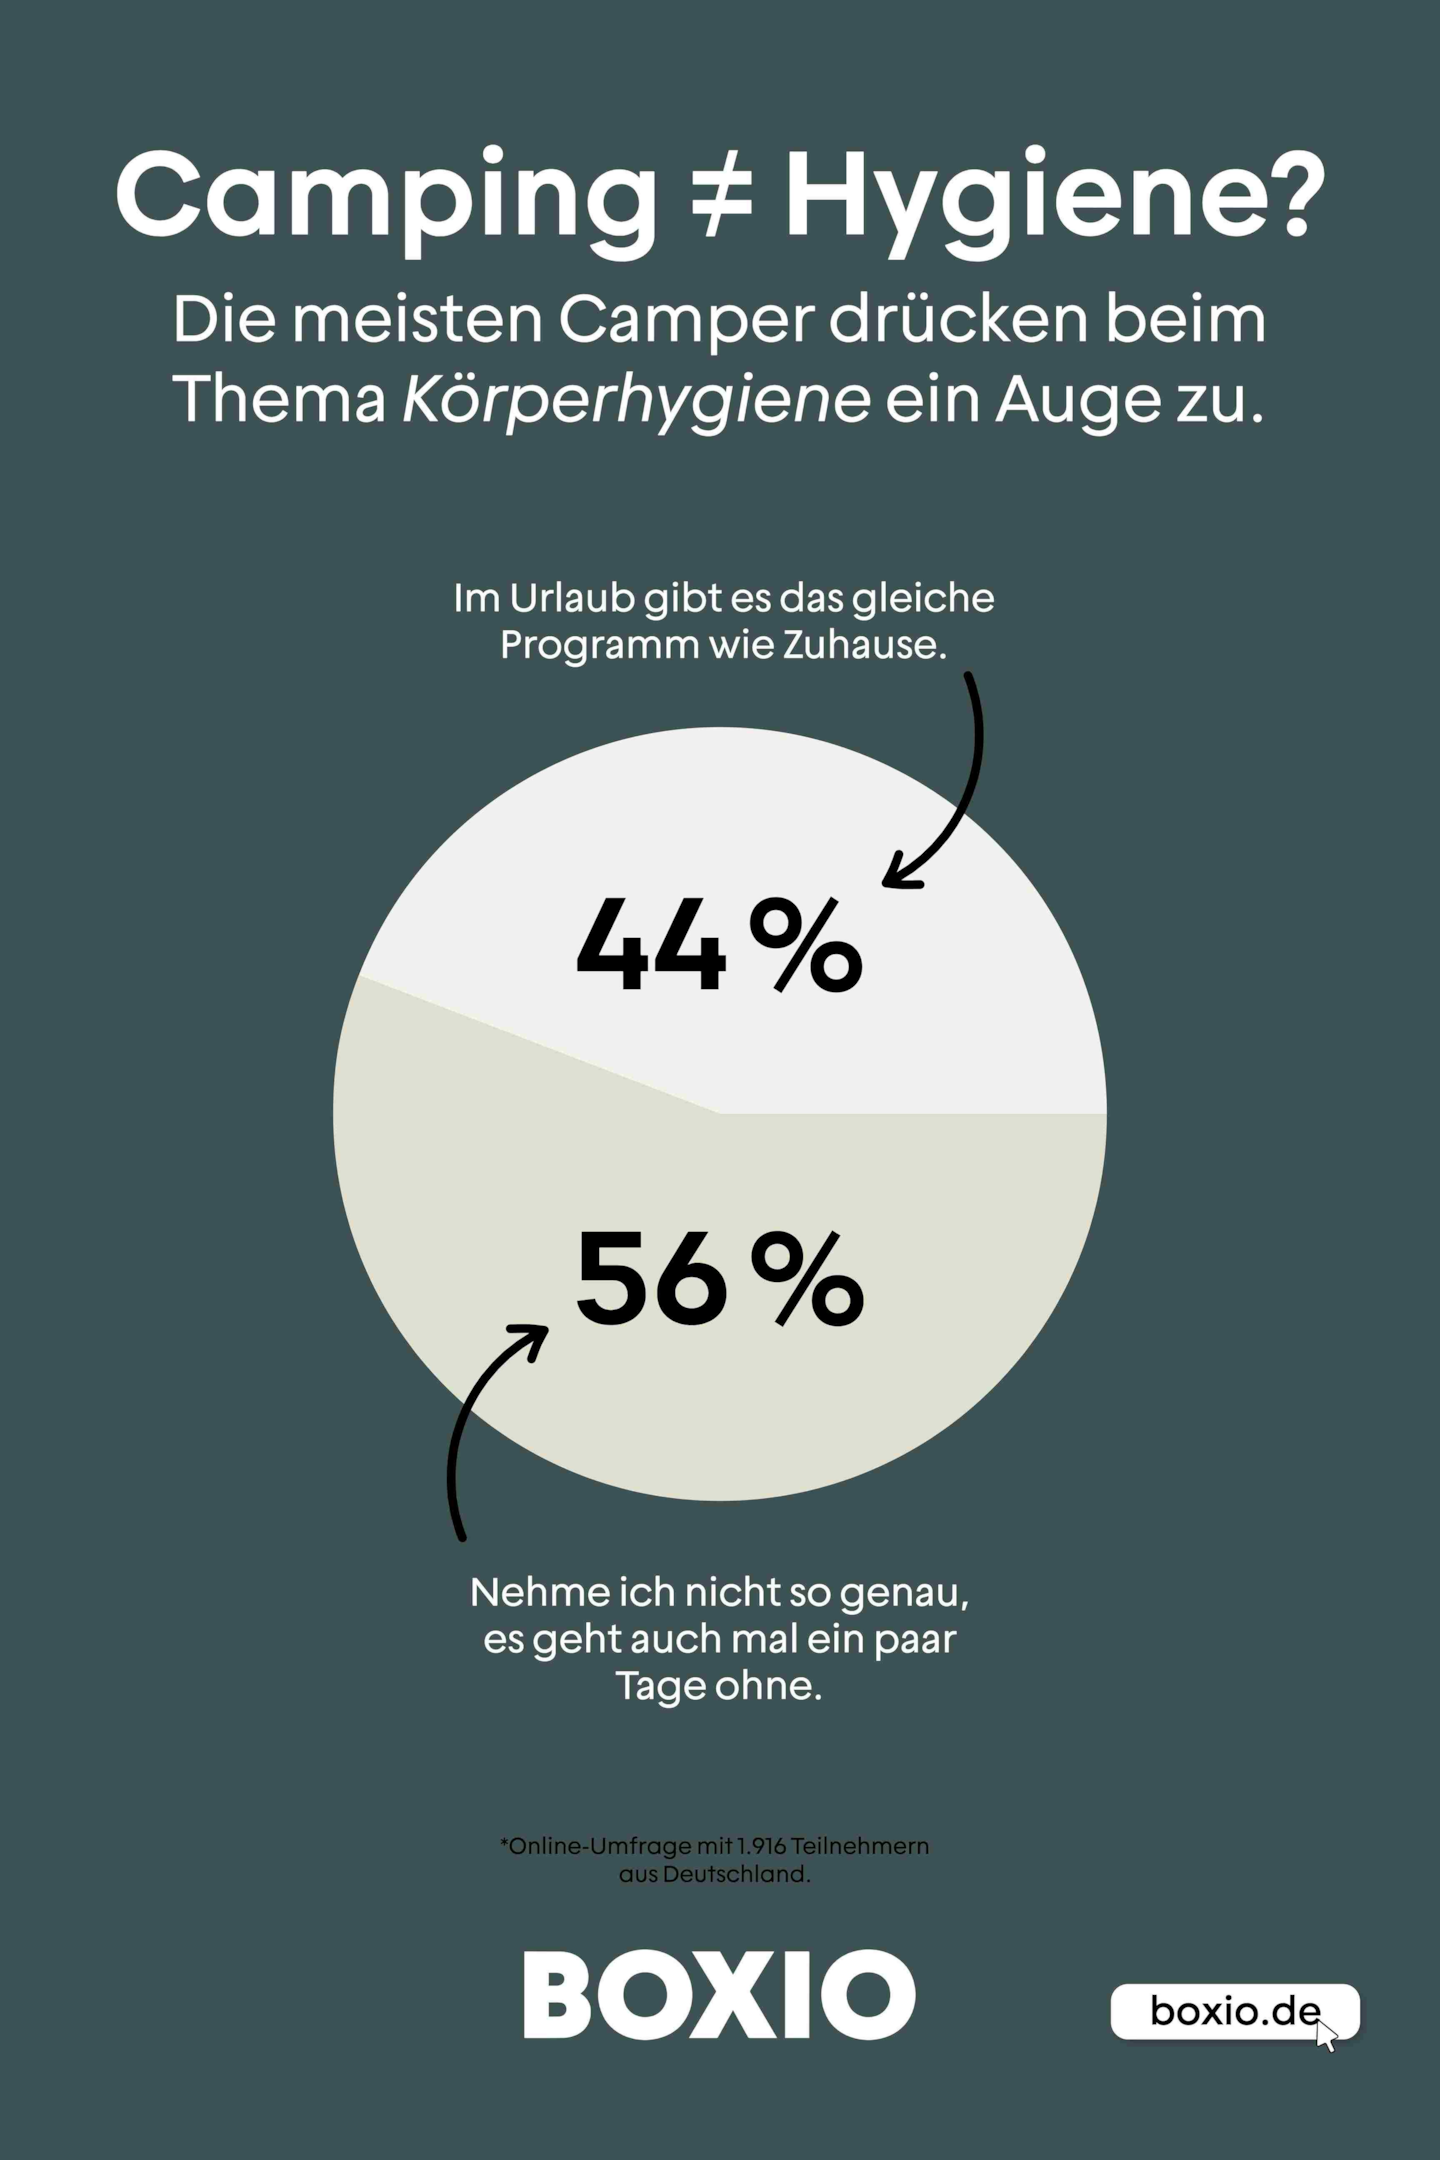 Gráfico sobre o tema da higiene nas férias de campismo, gráfico circular: 44% fazem o mesmo que em casa, 56% não o levam tão a sério